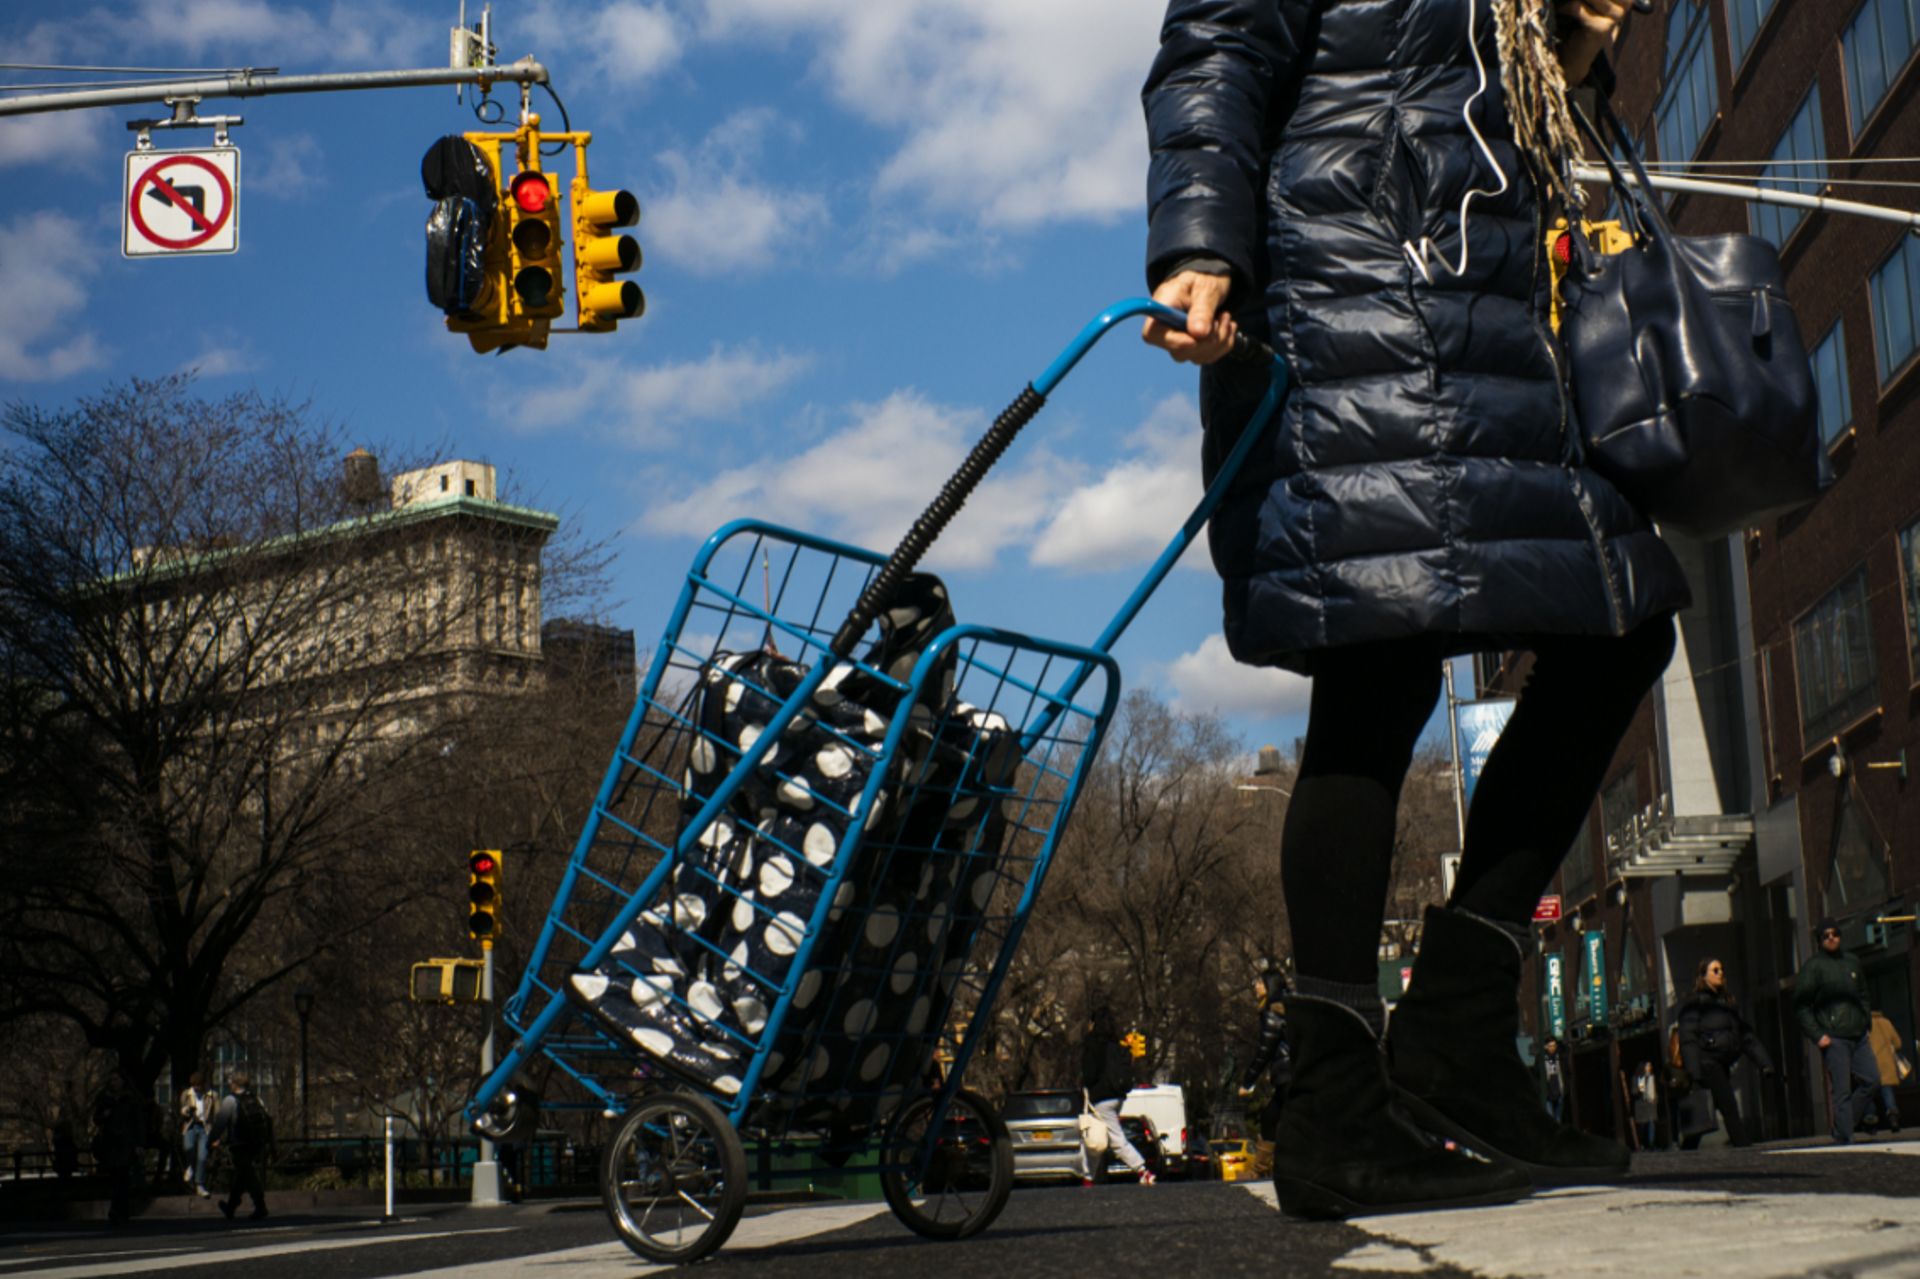 New York, temple du consumérisme, remballe ses sacs en plastique